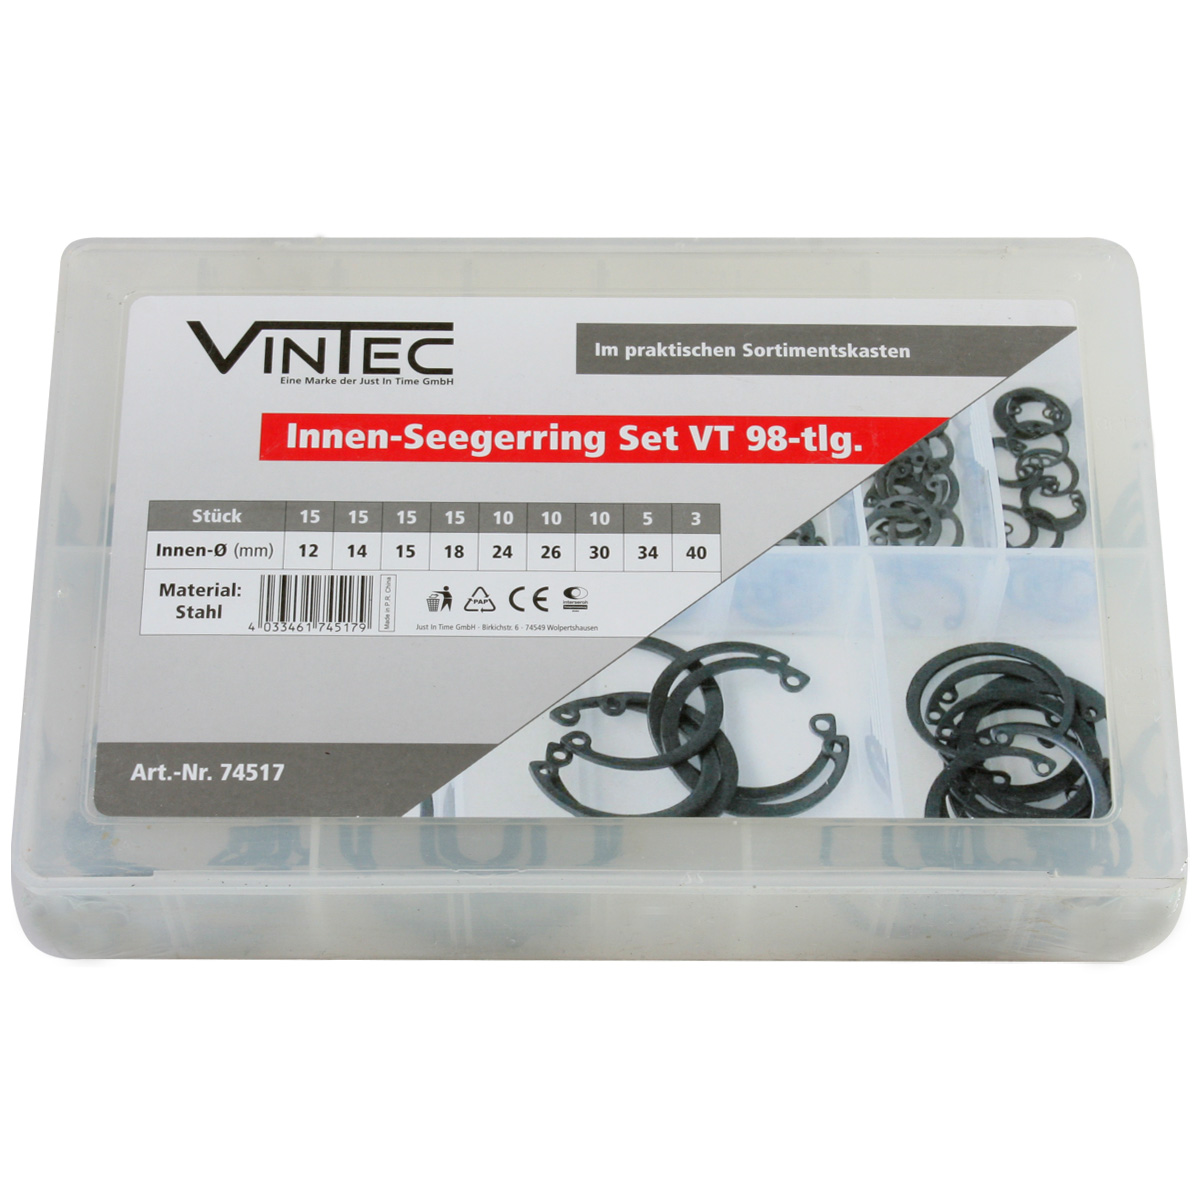 Innen-Seegerring Set "VT 98-tlg." von VINTEC